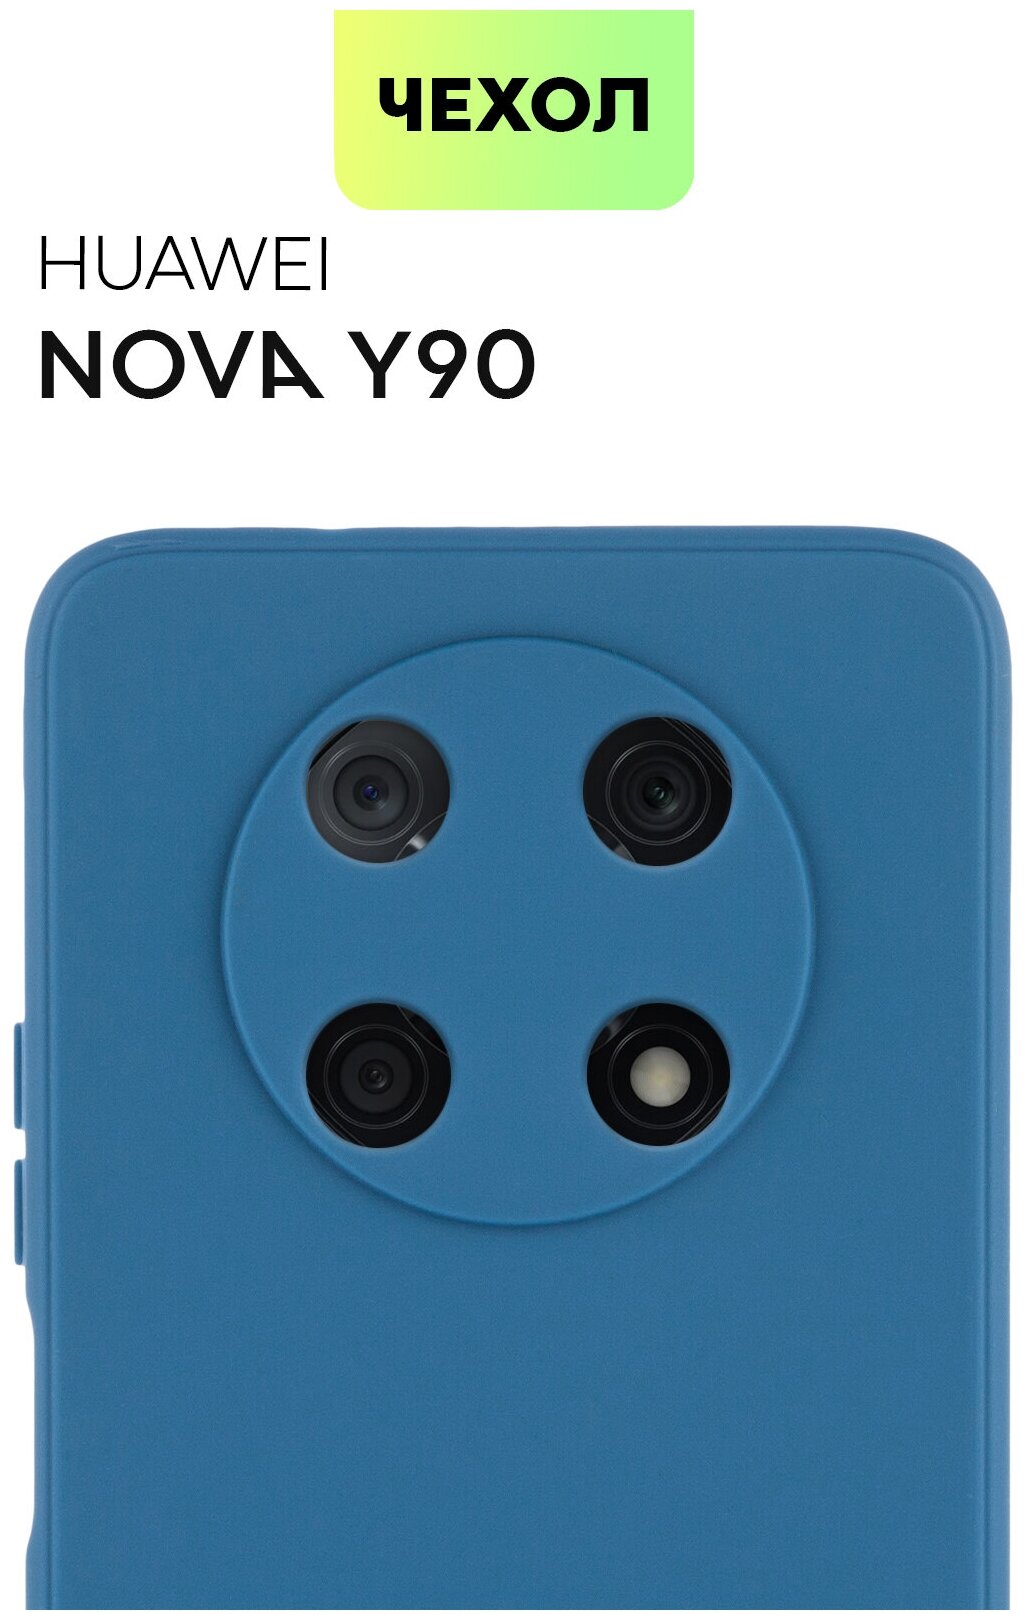 Чехол для Huawei Nova Y90 (Хуавей Нова у90, Нова ю90 ) тонкий, силиконовый чехол, с матовым покрытием и защитой модуля камер, темно-синий, BROSCORP